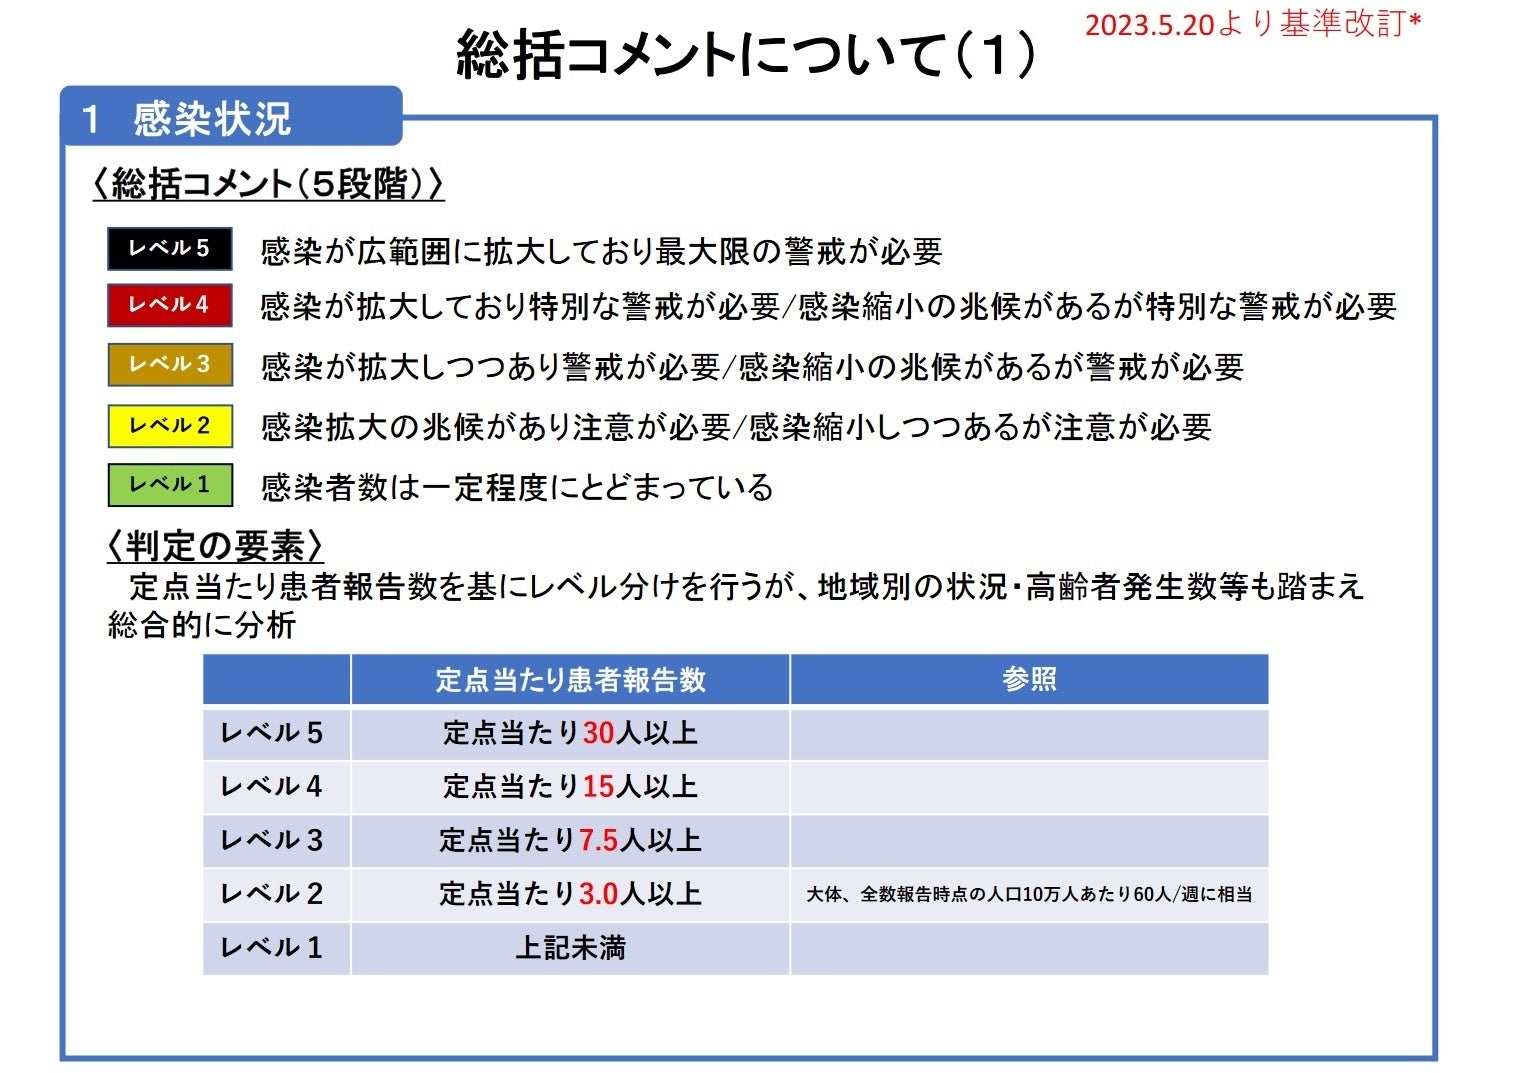 【岡山大学】岡山県内の感染状況・医療提供体制の分析について（2023年9月8日現在）